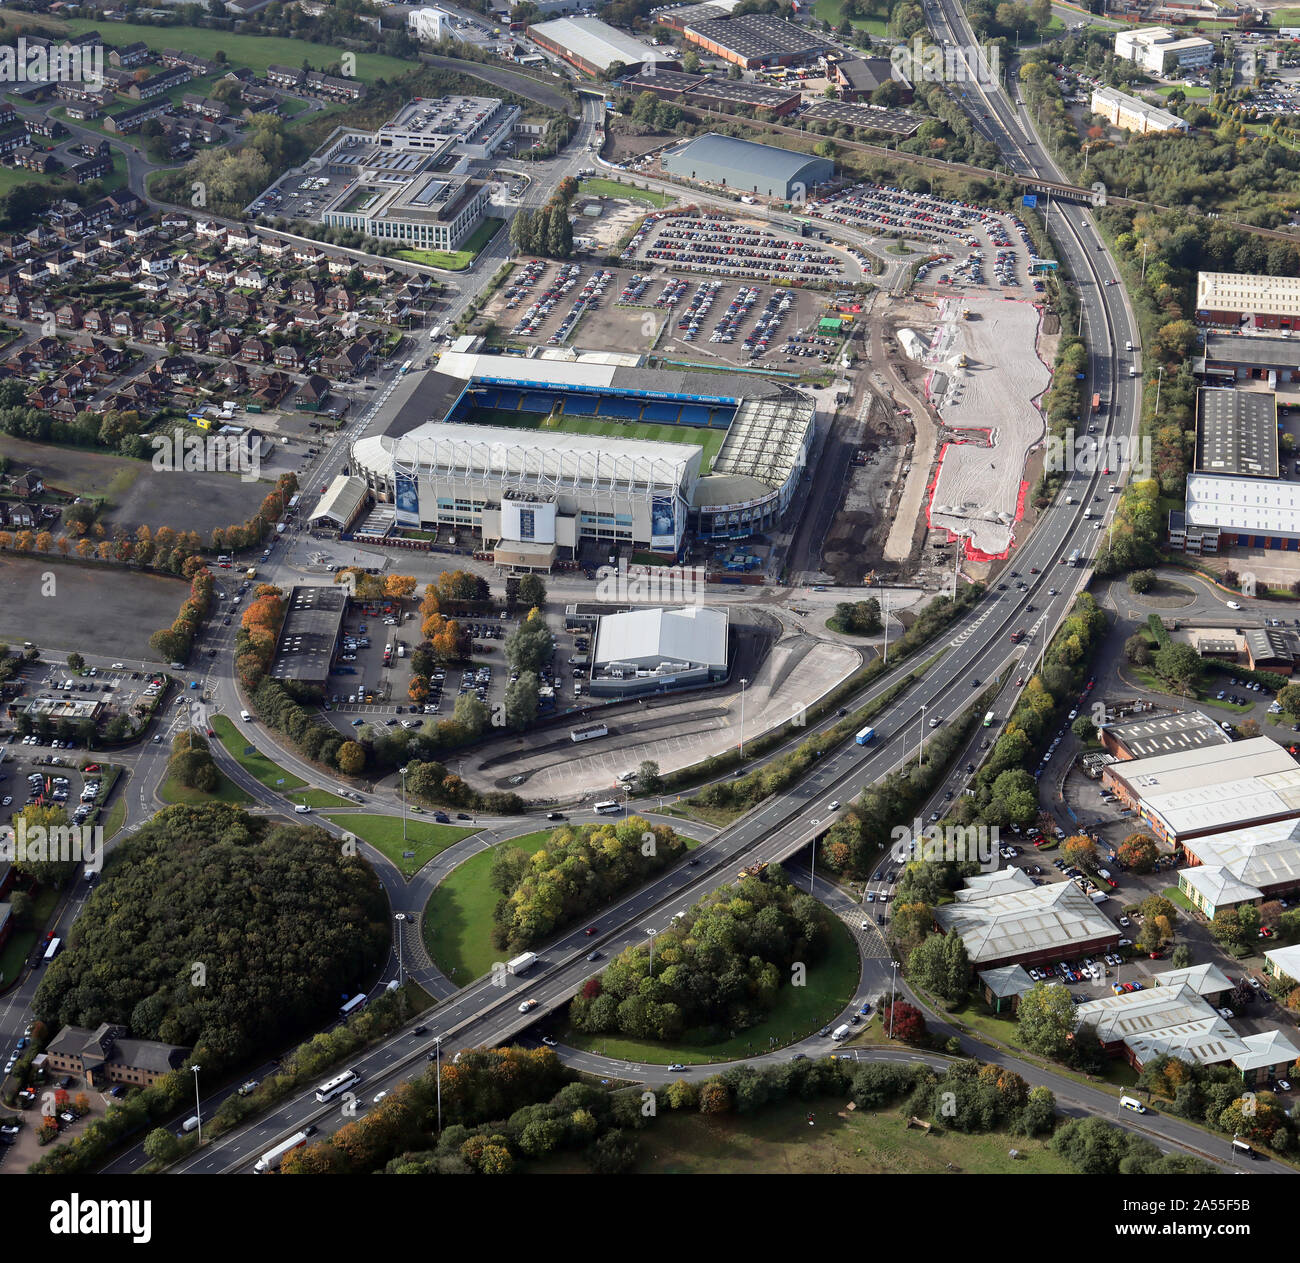 Vue aérienne de l'Elland Road Leeds United football ground et la sortie 2 de l'autoroute M621, Leeds, Royaume-Uni Banque D'Images